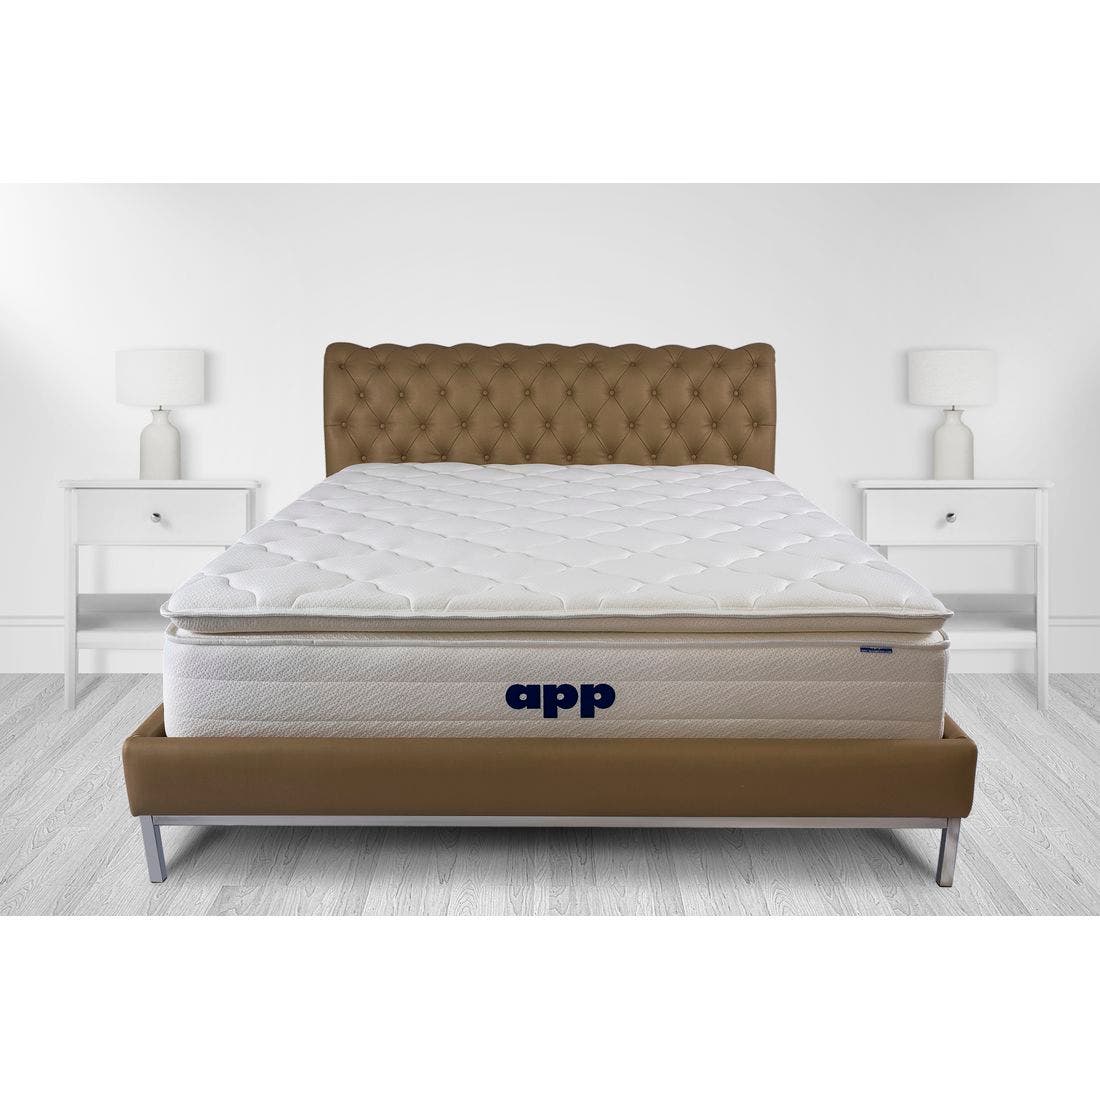 39015035-mattress-bedding-mattresses-pocket-spring-mattress-31